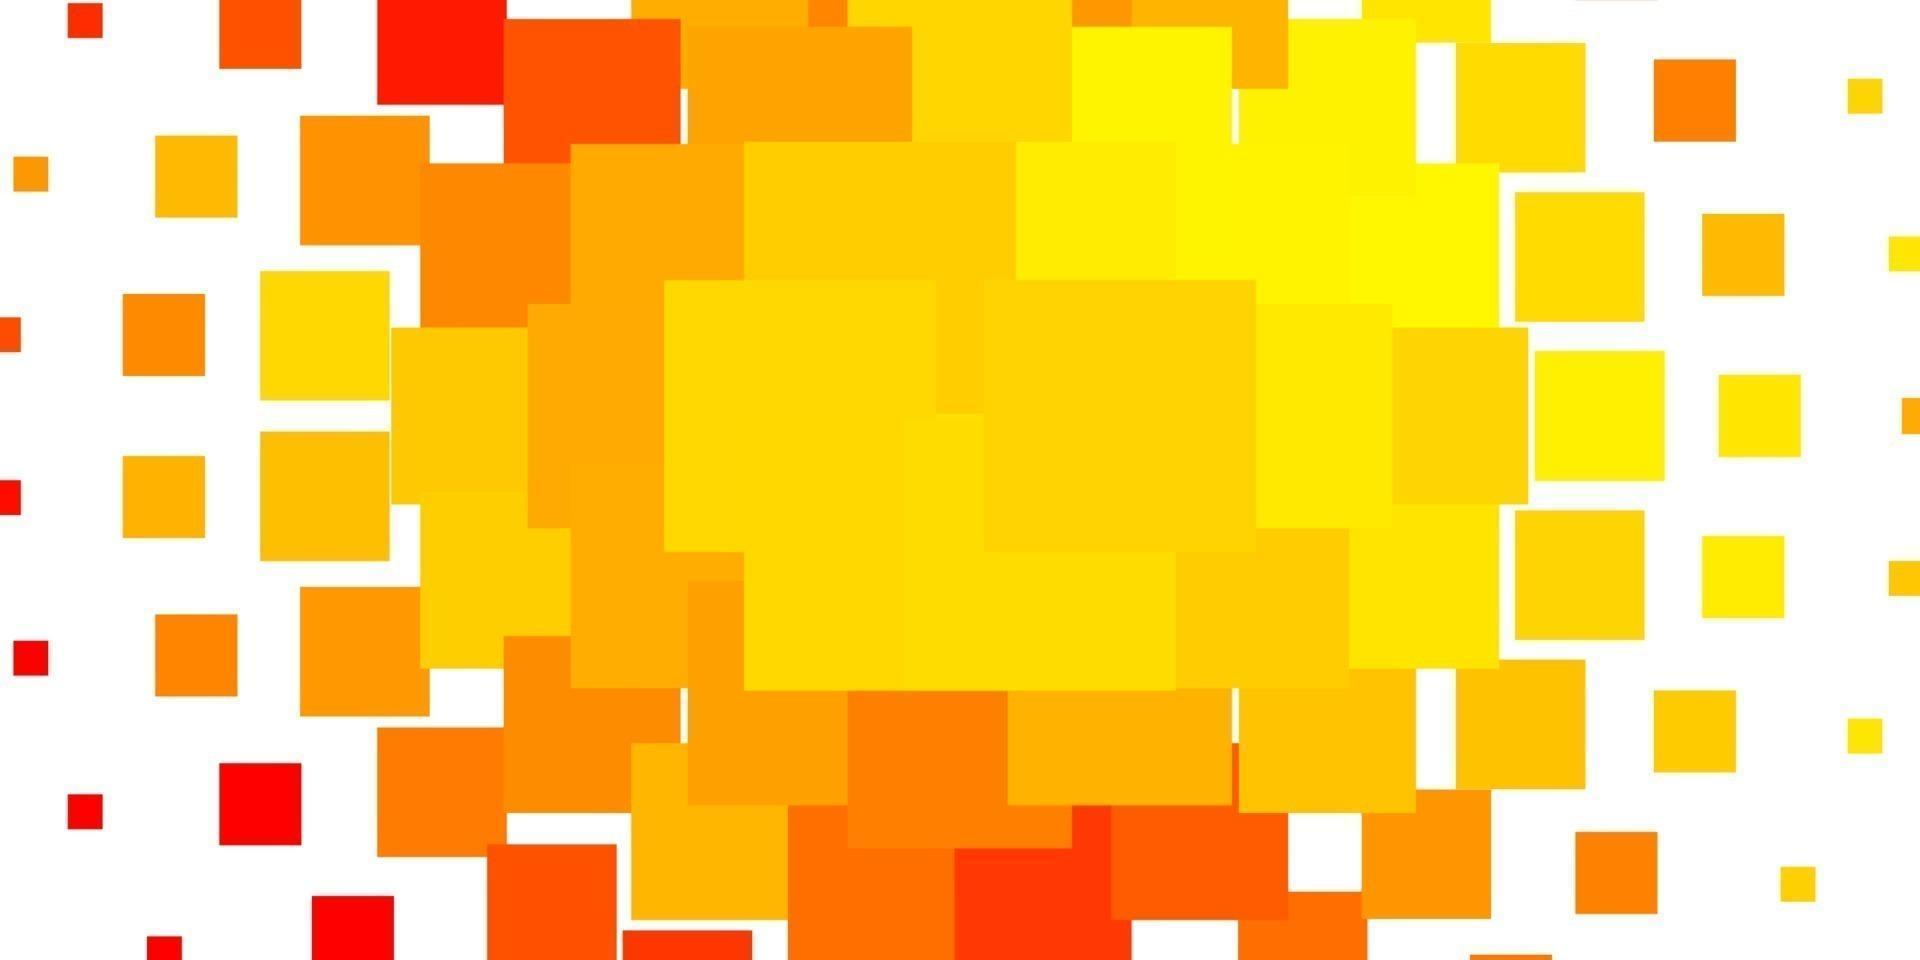 trama vettoriale arancione chiaro in stile rettangolare.